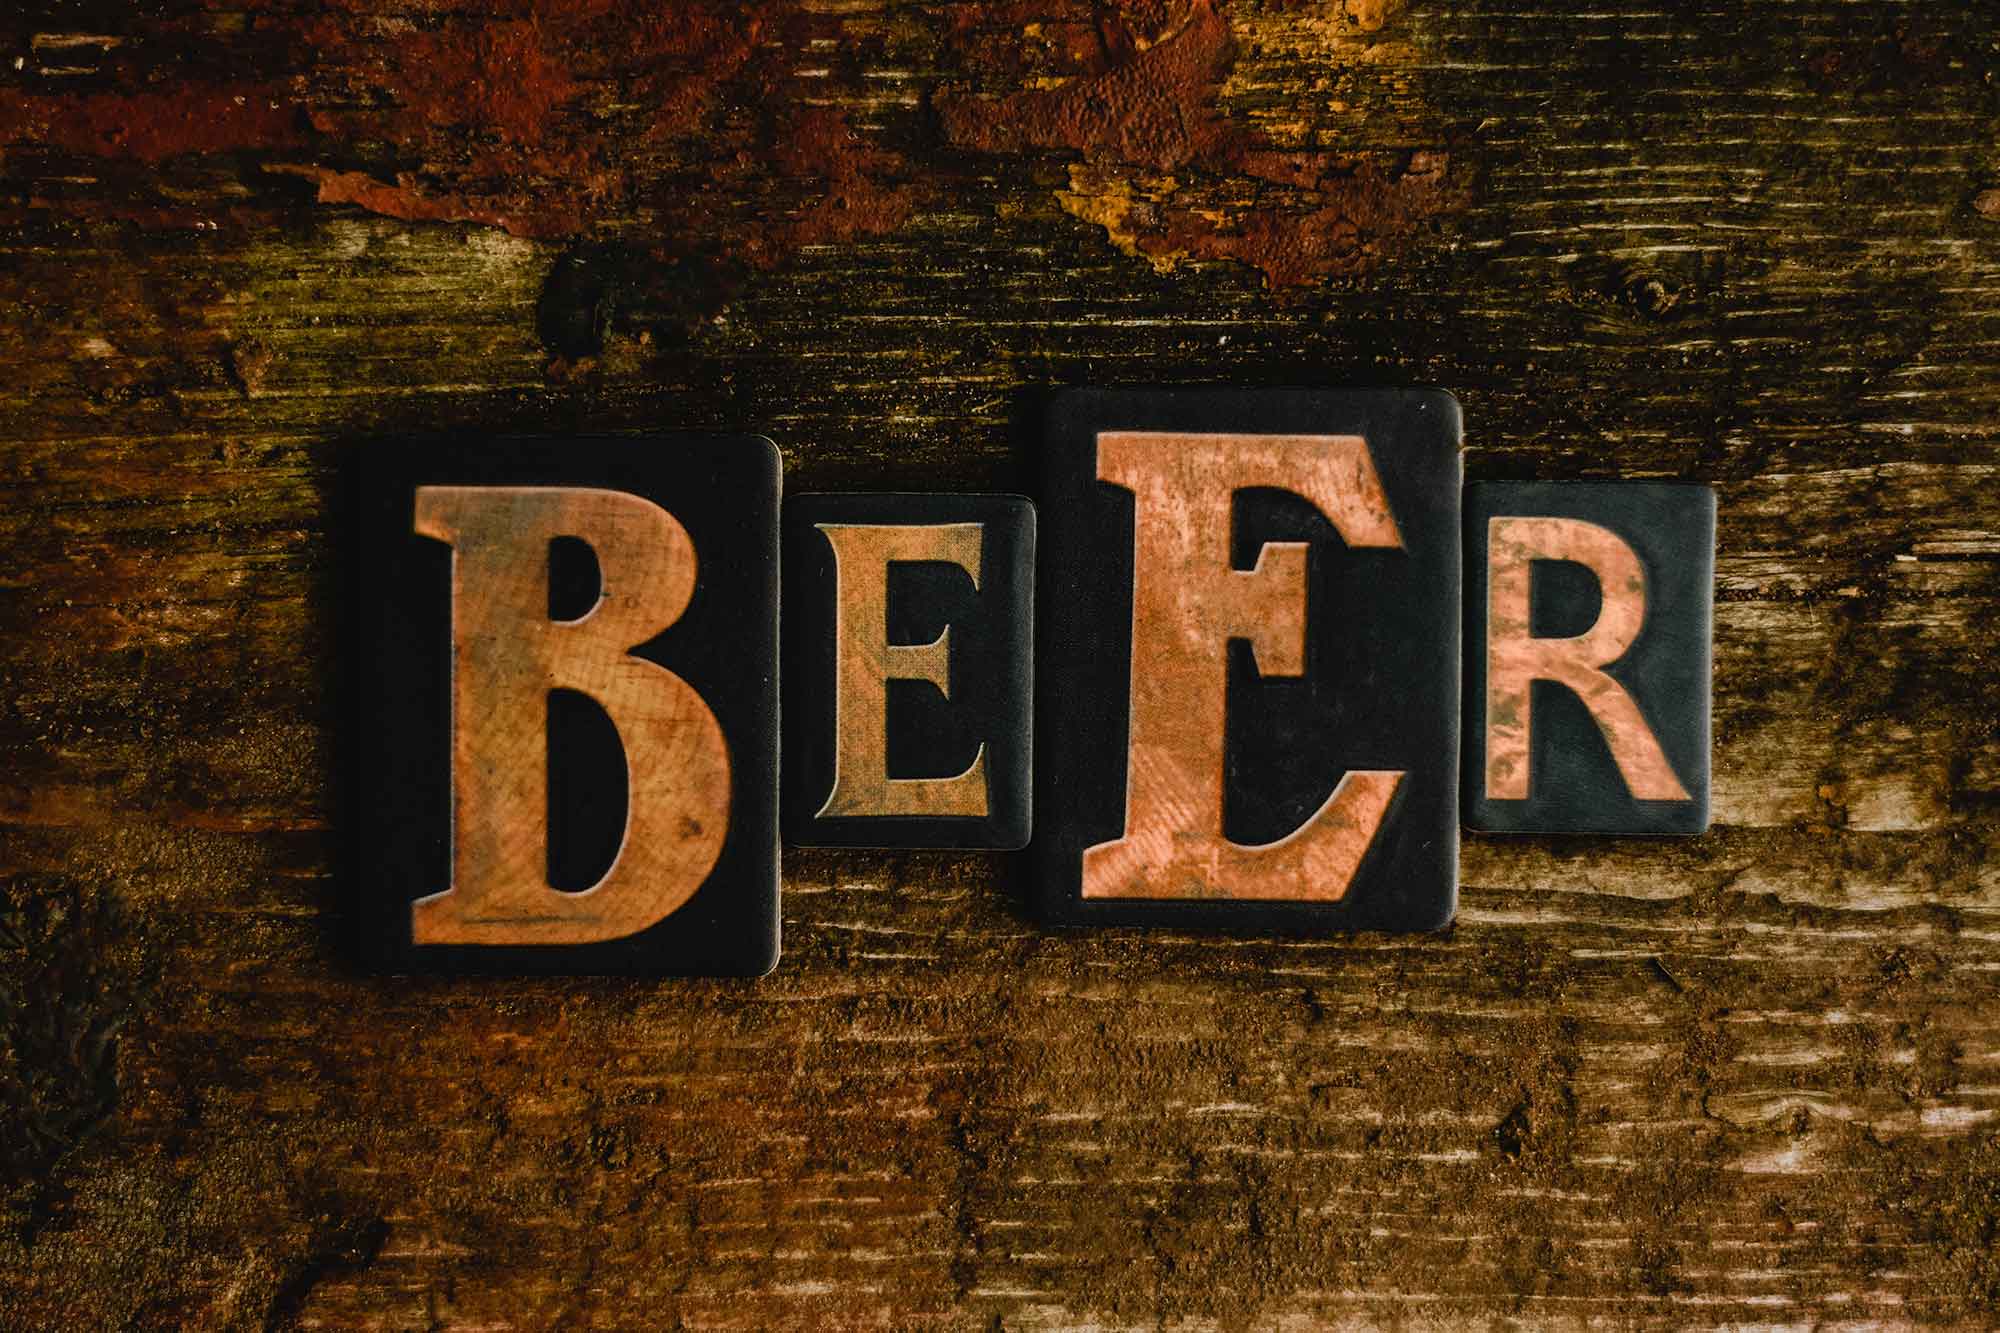 Die-cut beer sign